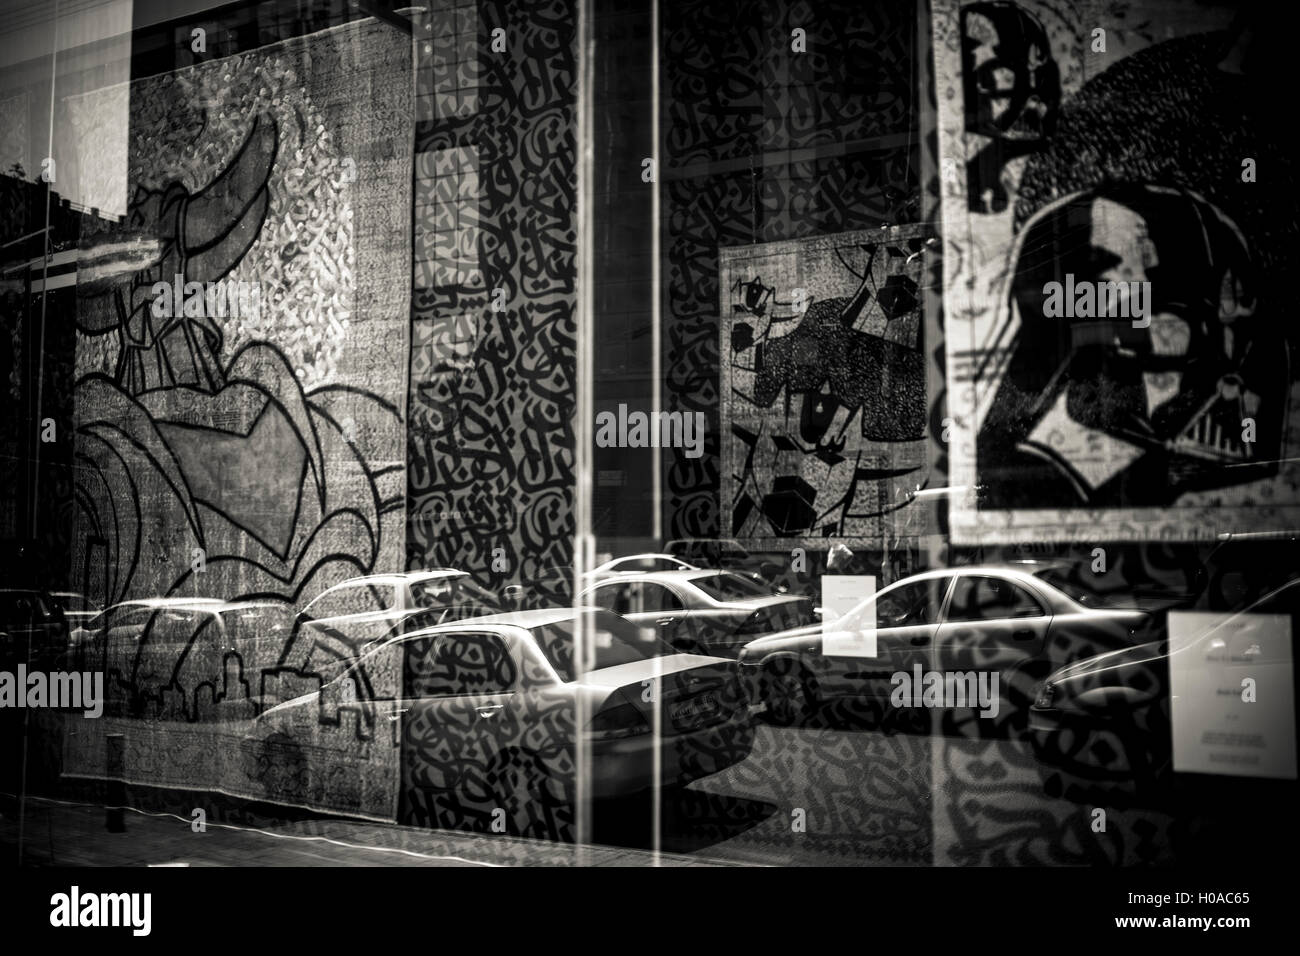 Les graffitis à Beyrouth - 10/06/2016 - Liban / Beyrouth - Beyrouth, Beyrouth, juin 2016. Certains artistes de rue ont fait à des endroits haut de gamme. Voici le travail de Ashekman, affichée à l'Iwan Maktabi vendeur de tapis de luxe. - Bilal Tarabey / Le Pictorium Banque D'Images